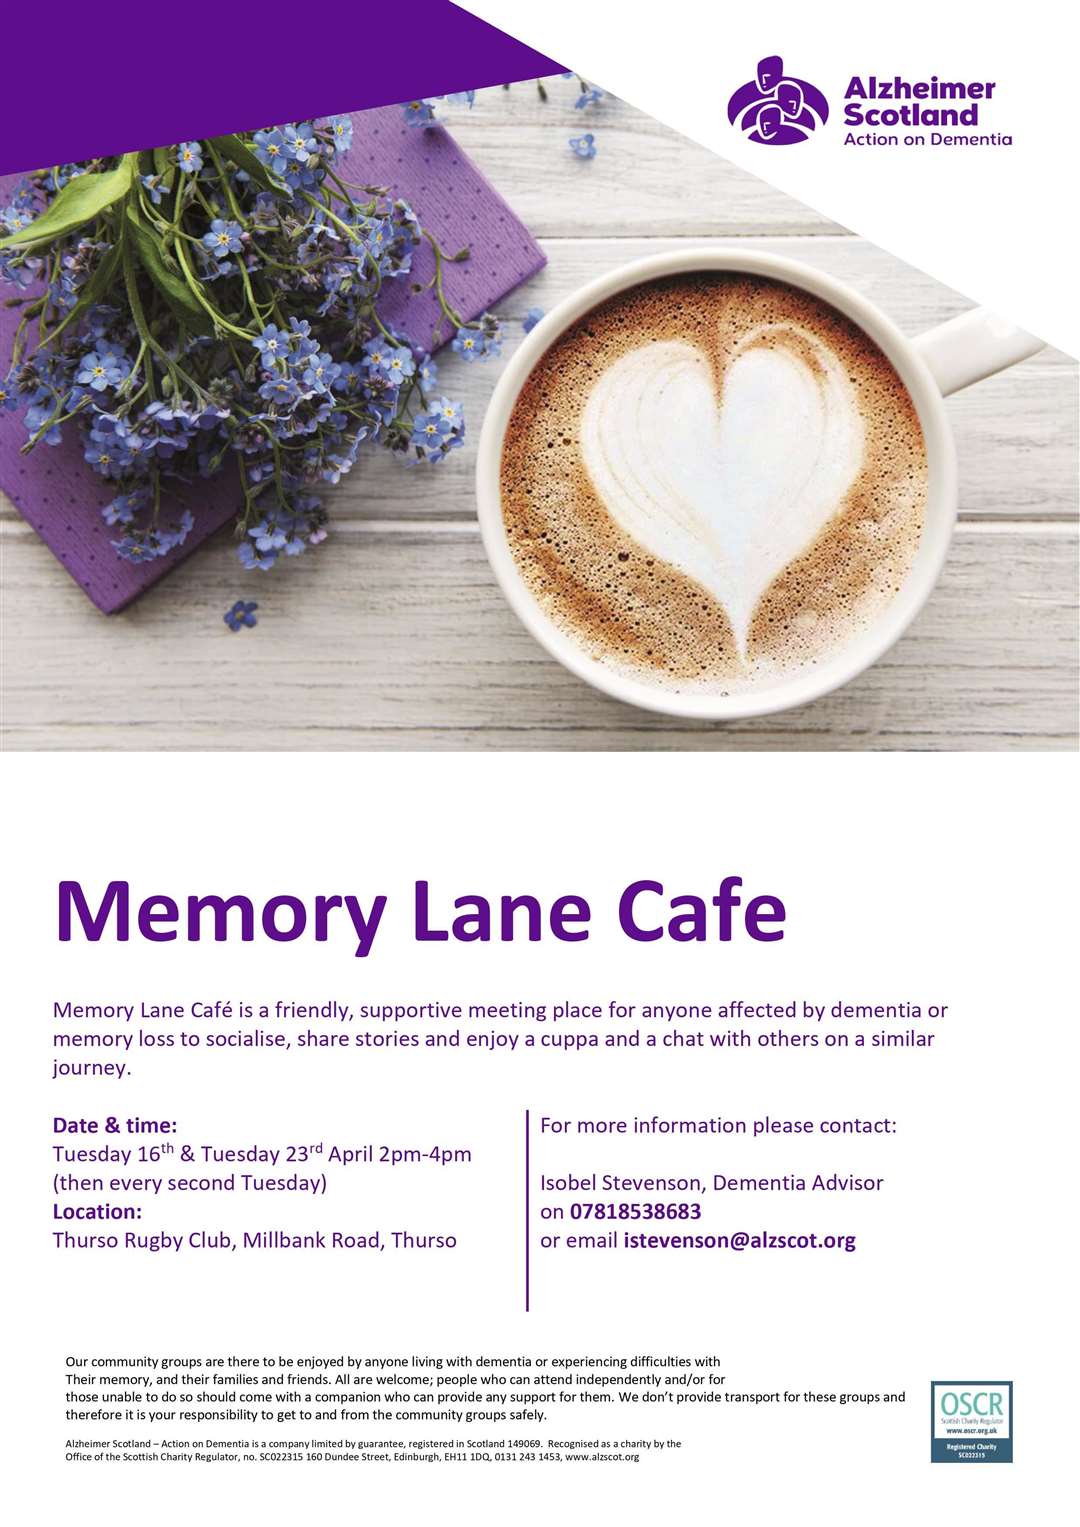 Memory Lane Cafe poster.